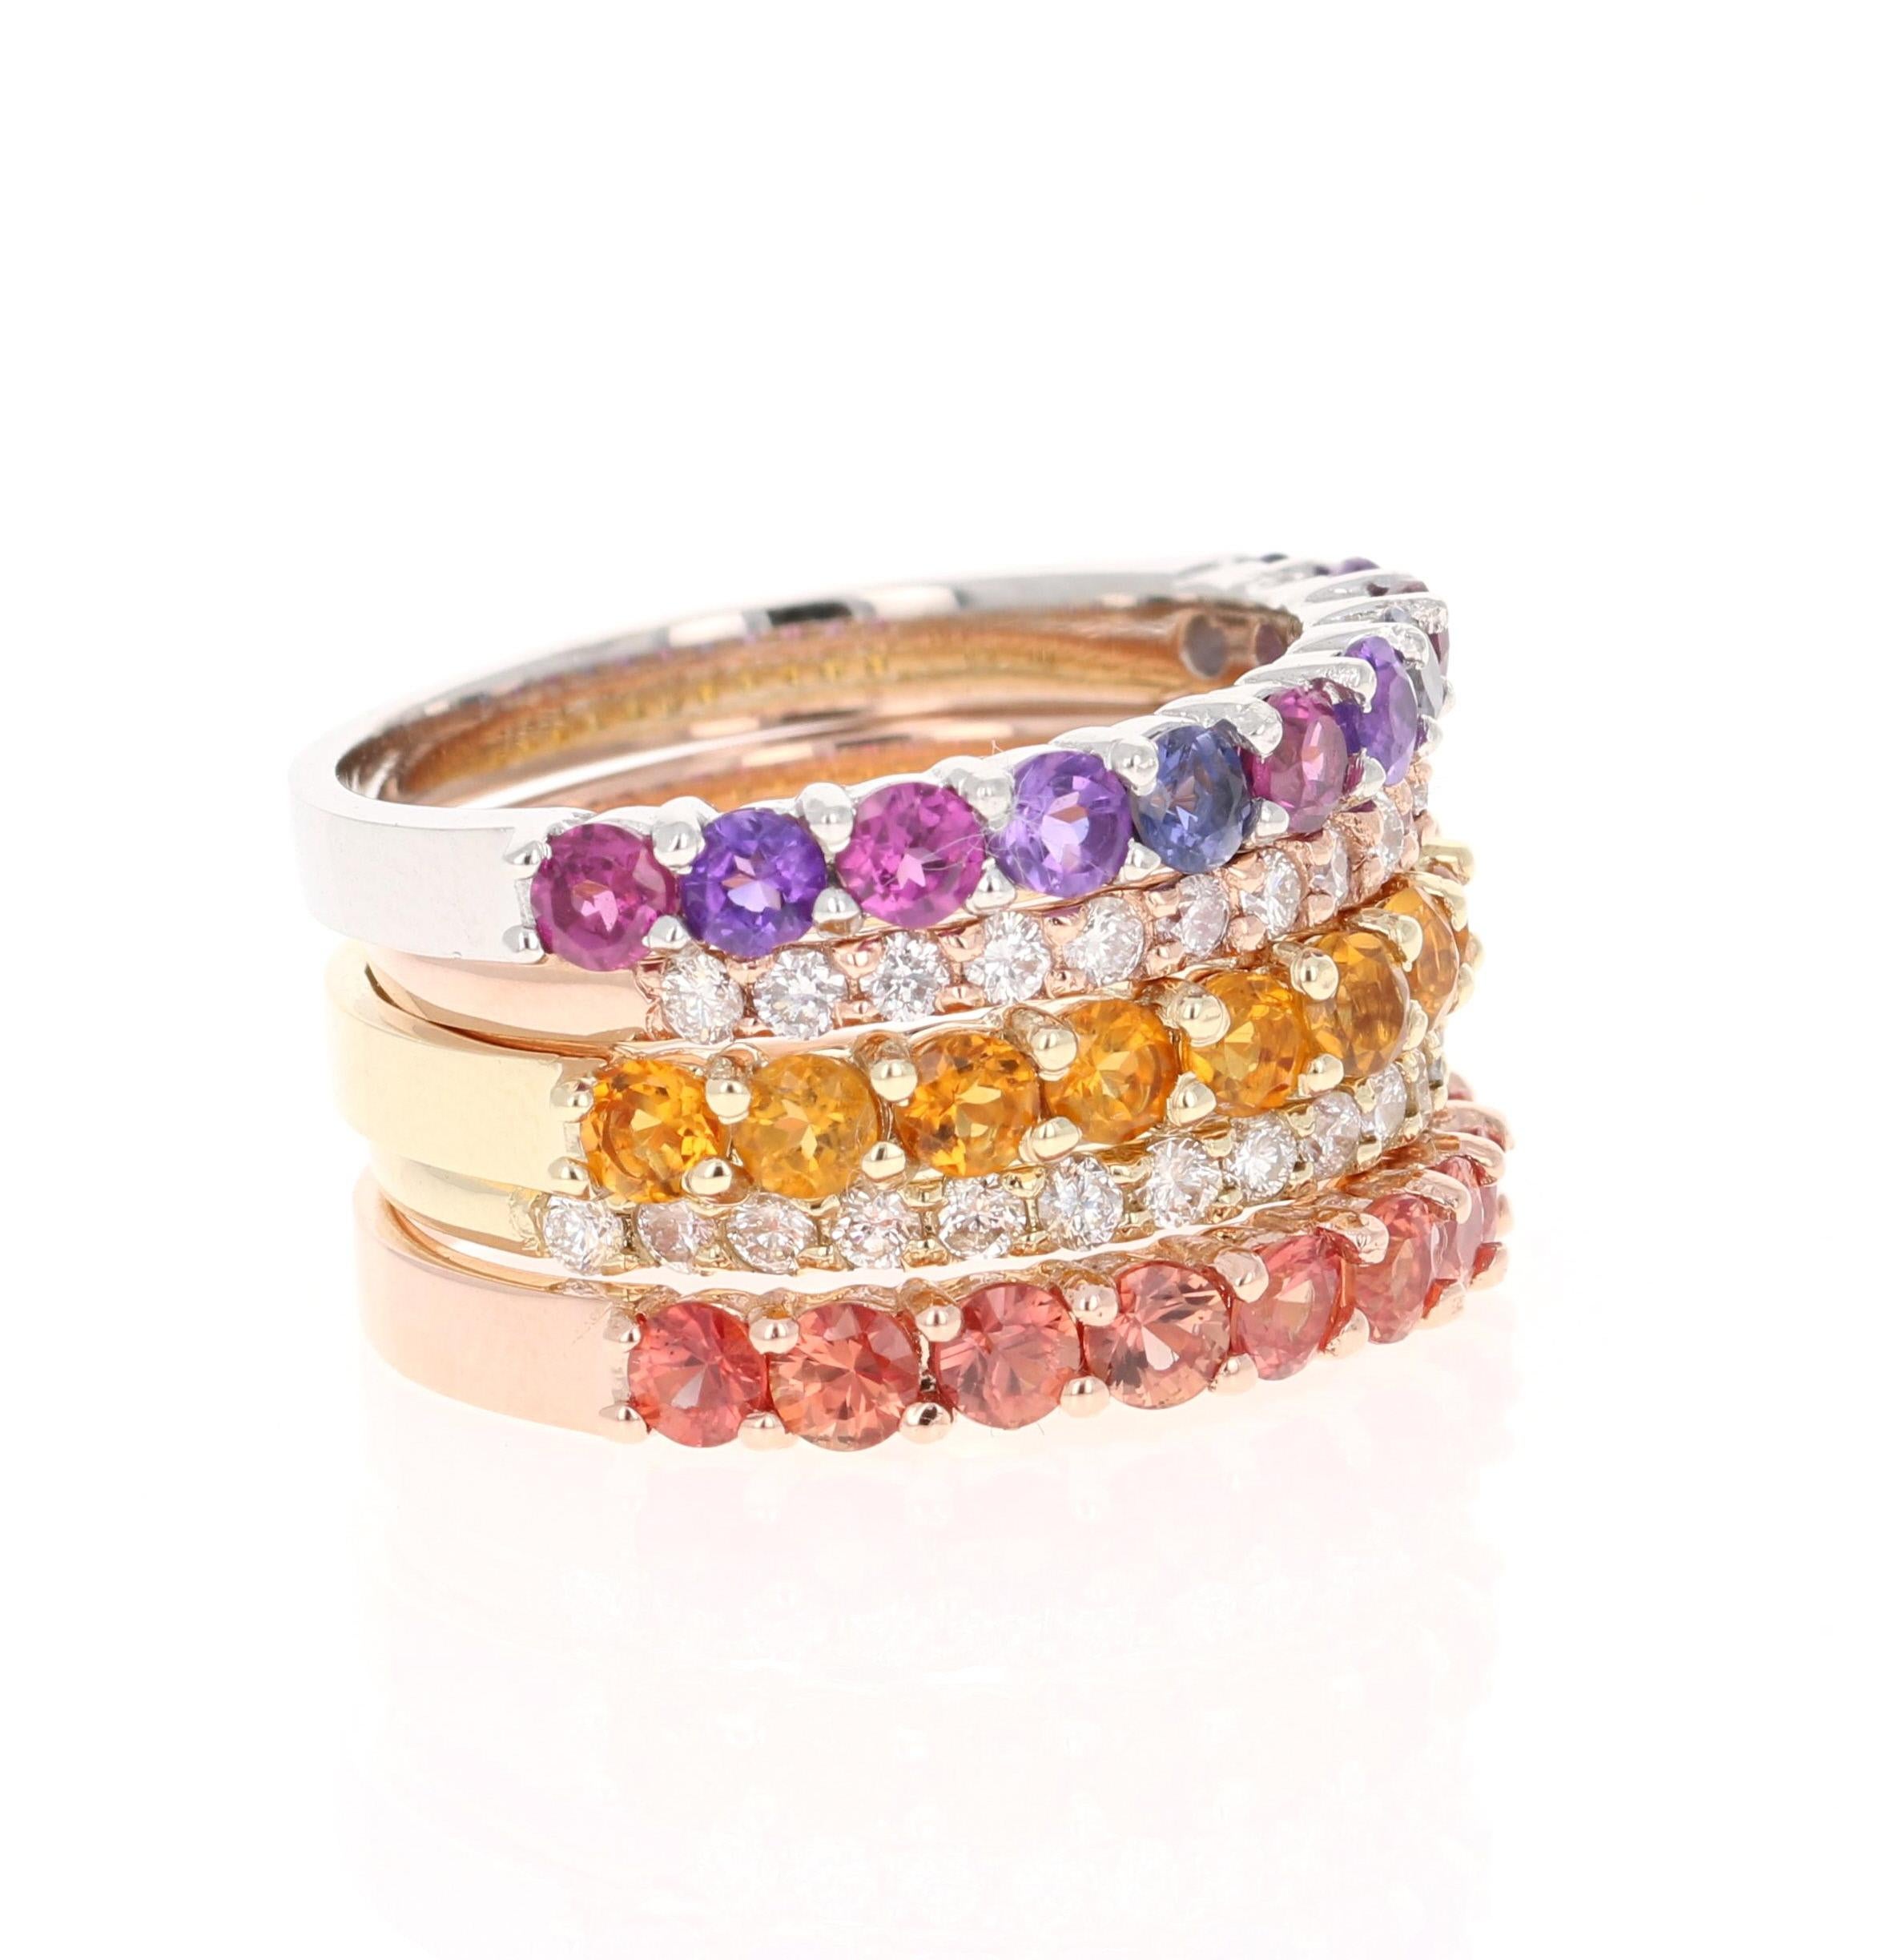 3.33 Carat Multi Color Gemstone Diamond Gold Stackable Bands

Ces bracelets empilables polyvalents peuvent être portés de multiples façons et peuvent même être utilisés avec d'autres bijoux. Vous pouvez utiliser uniquement les bracelets diamantés ou